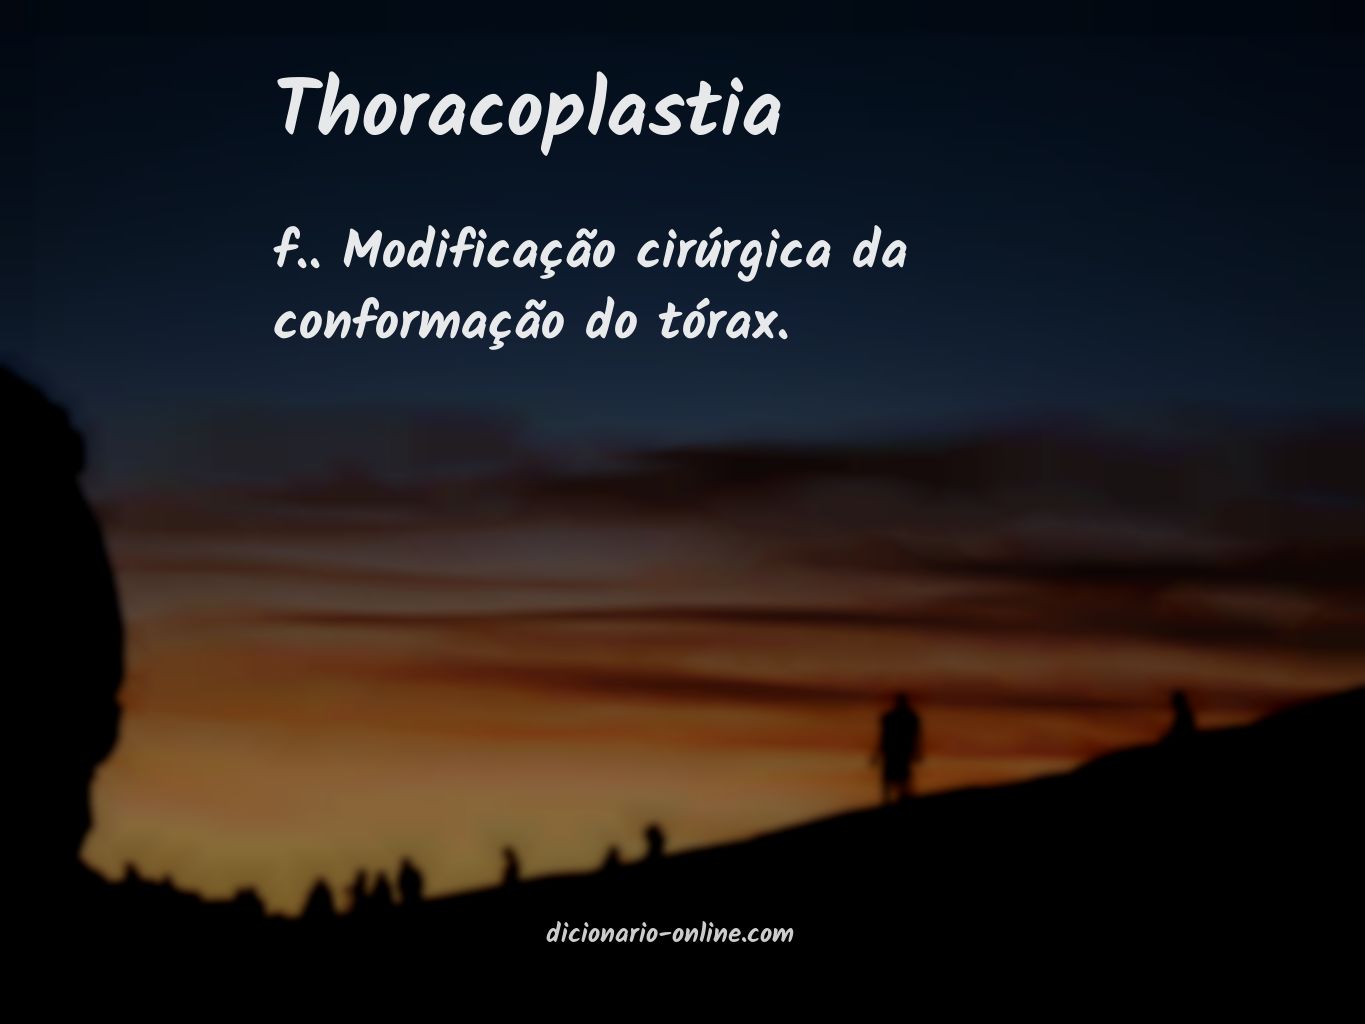 Significado de thoracoplastia